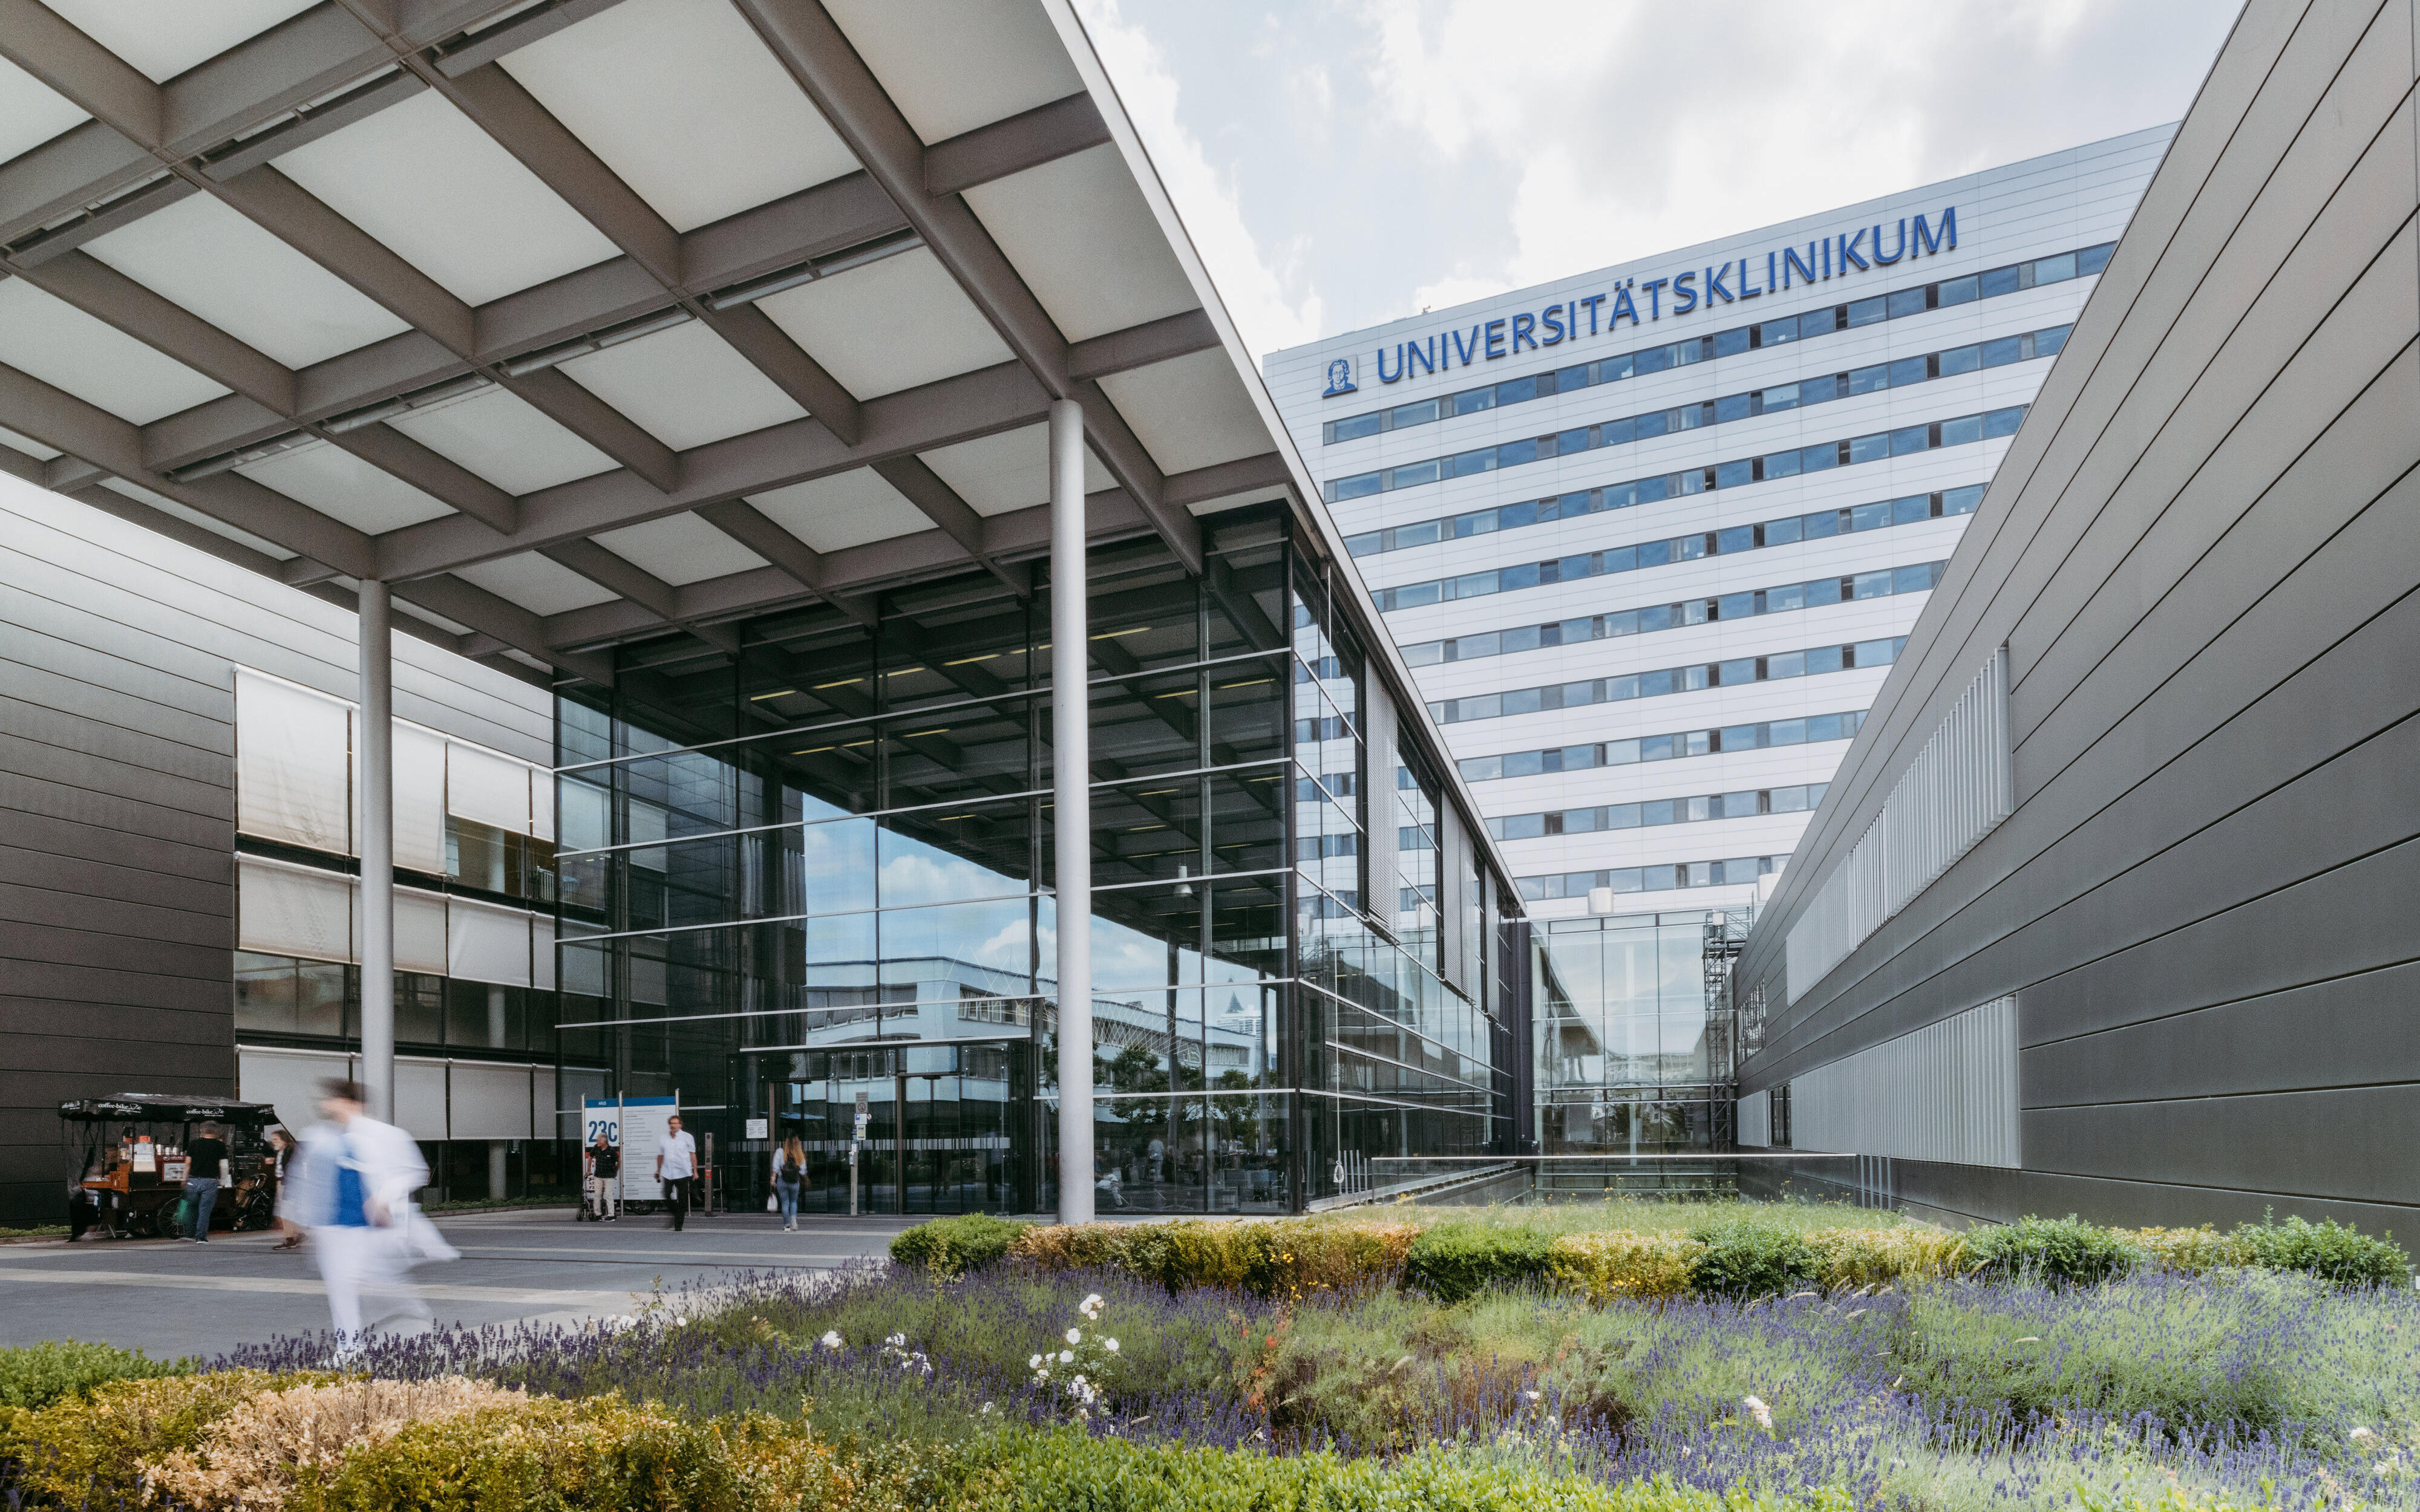 Eingangsbereich des Universitätsklinikums Frankfurt von außen, daneben ist Bepflanzung zu sehen. Teile der Fassade sind zudem sichtbar, wie der Schriftzug Universitätsklinikum